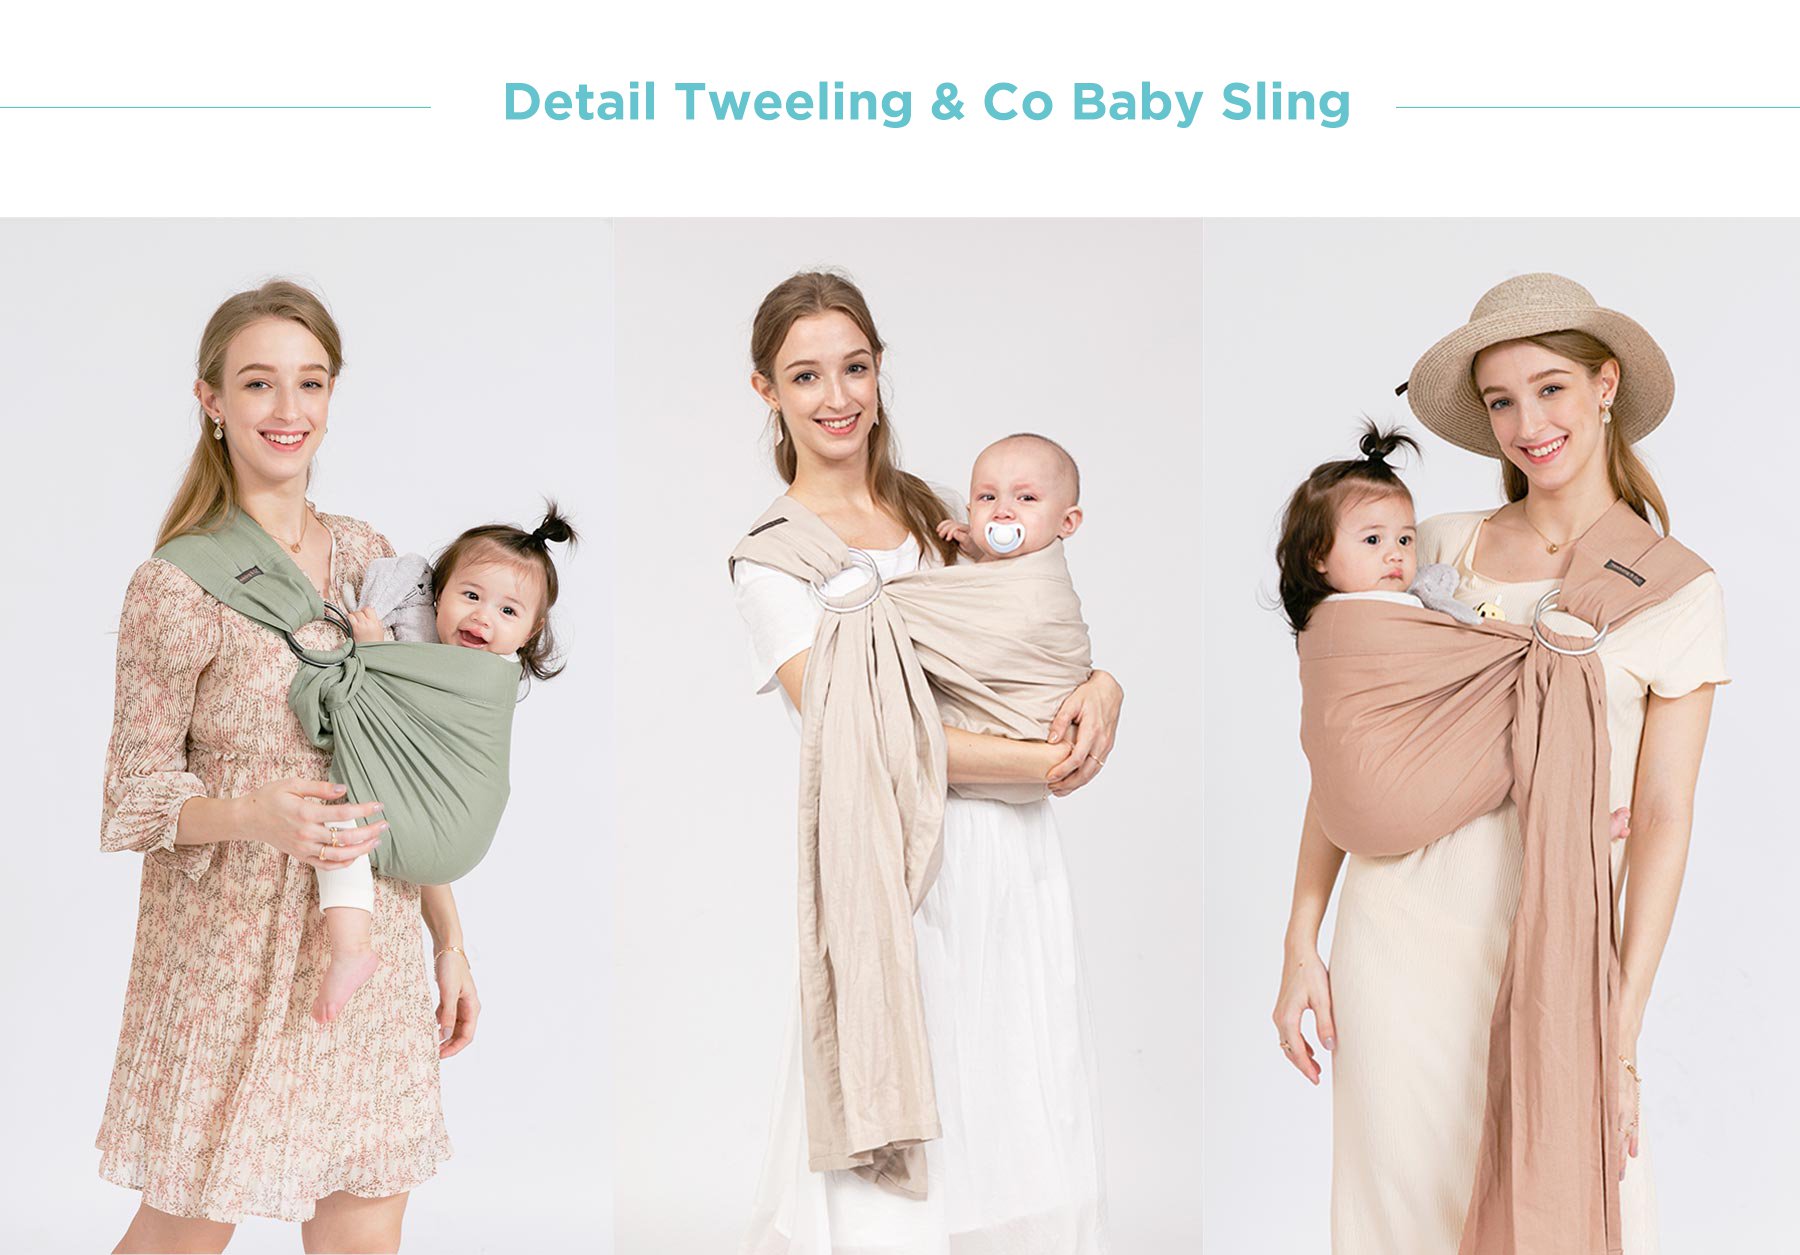 Tweeling & Co. Original Collection Baby Sling description image